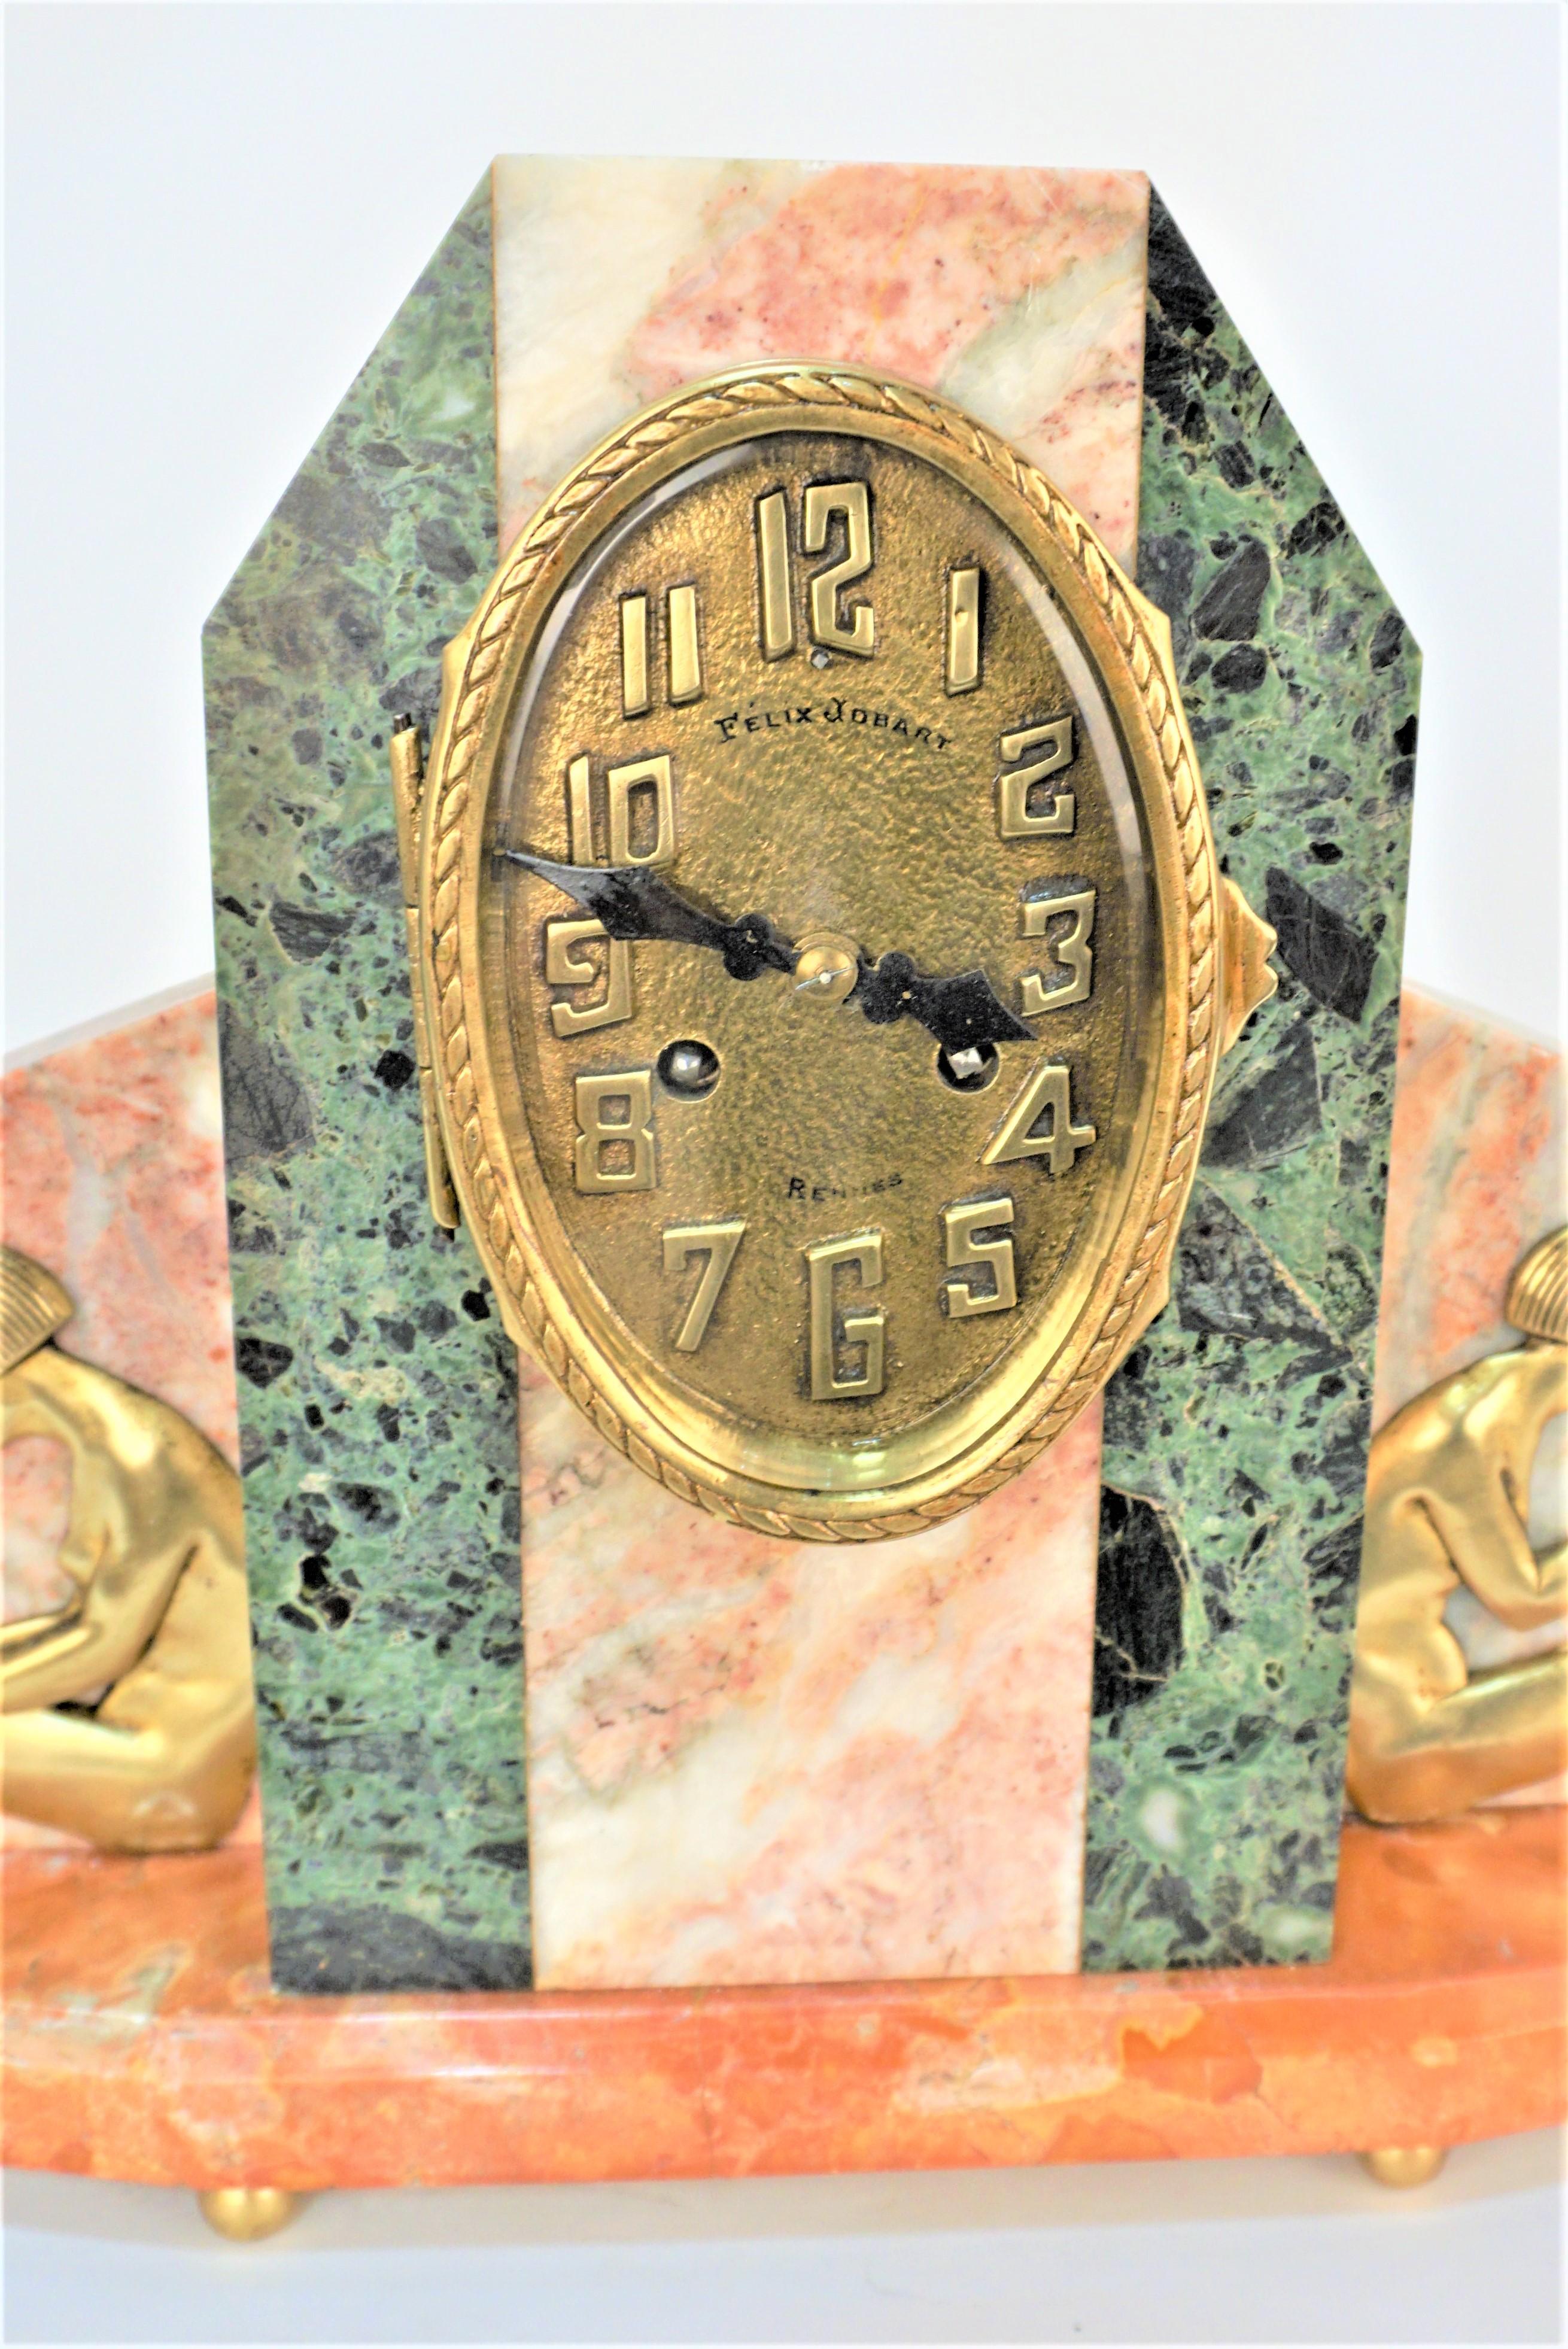 Très élégante horloge art déco en bronze et marbre tricolore circa 1920
en très bon état de fonctionnement.
Cette horloge a été nettoyée et entretenue par des professionnels.